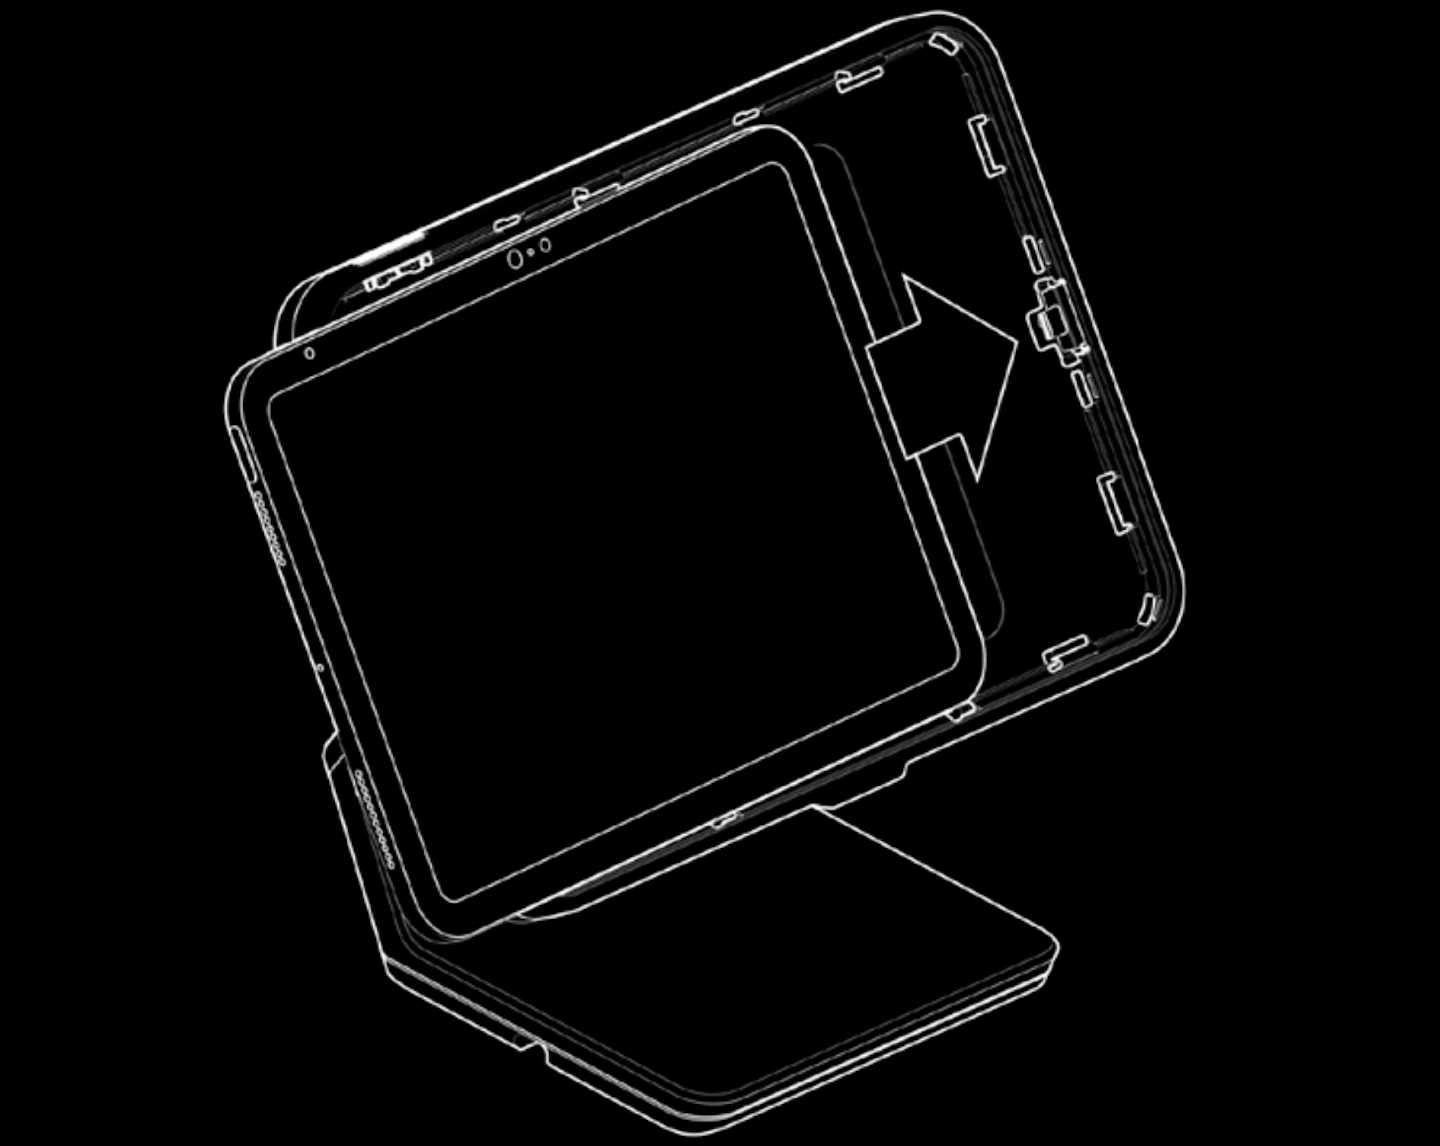 Illustration du support Lightspeed montrant l'insertion de l'iPad. Une fléche indique que l'iPad est introduit vers la droite.